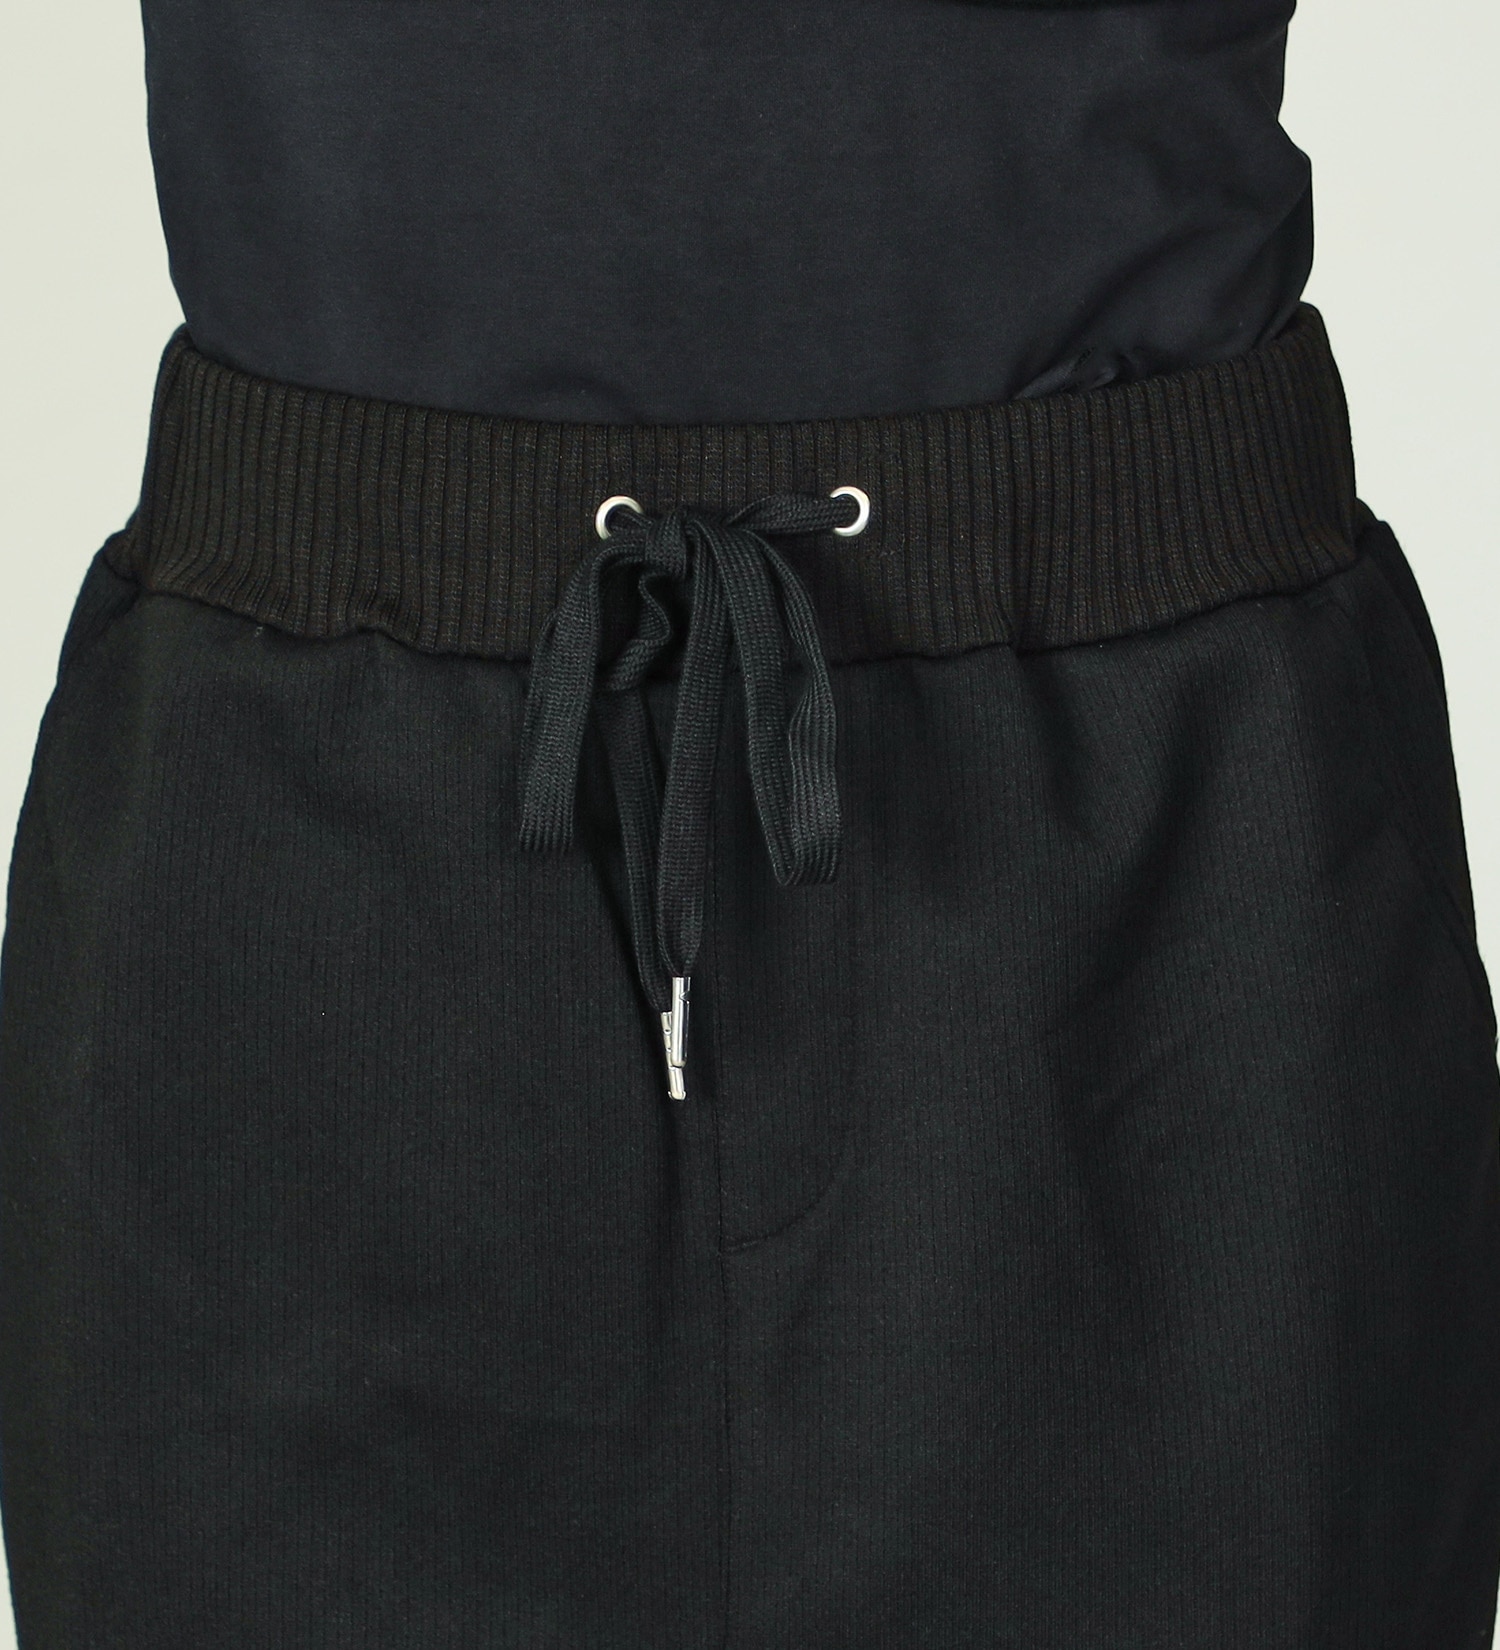 EDWIN(エドウイン)の【SALE】リブタイトスカート【アウトレット店舗・WEB限定】|スカート/スカート/レディース|ブラック